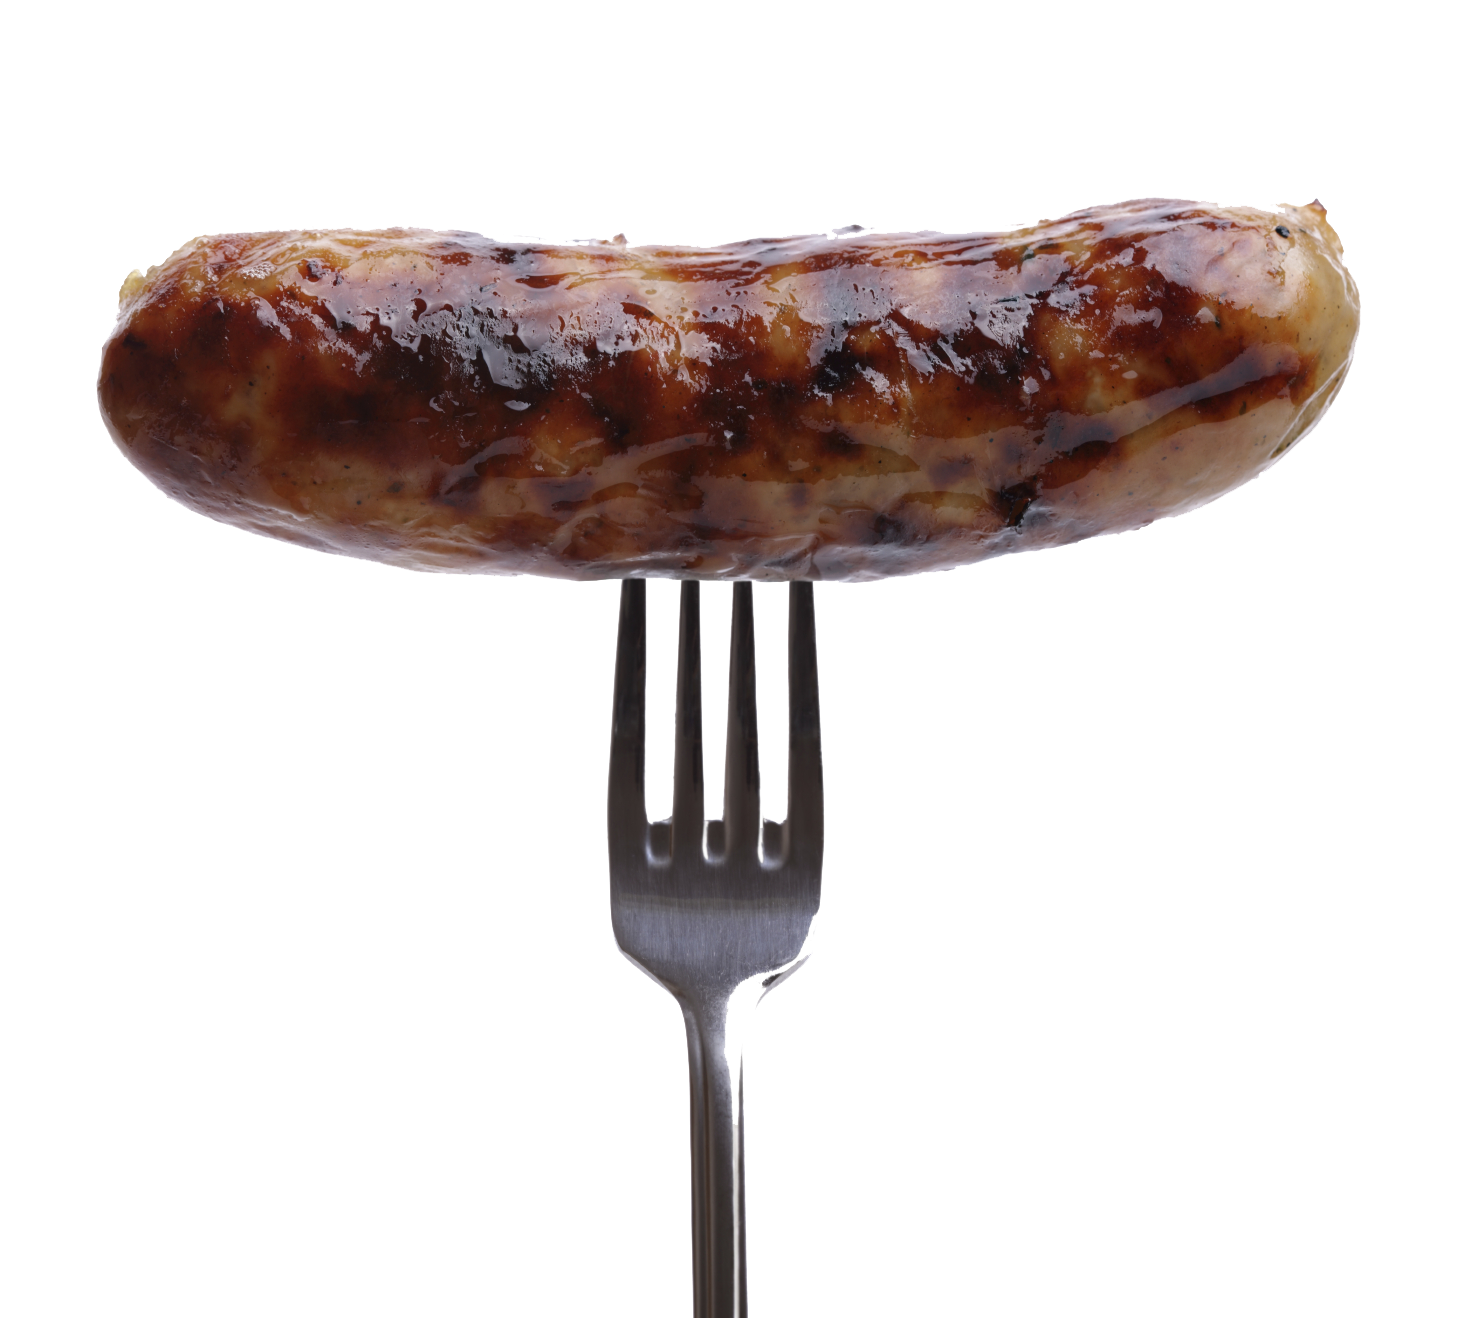 Sausage Image PNG Image